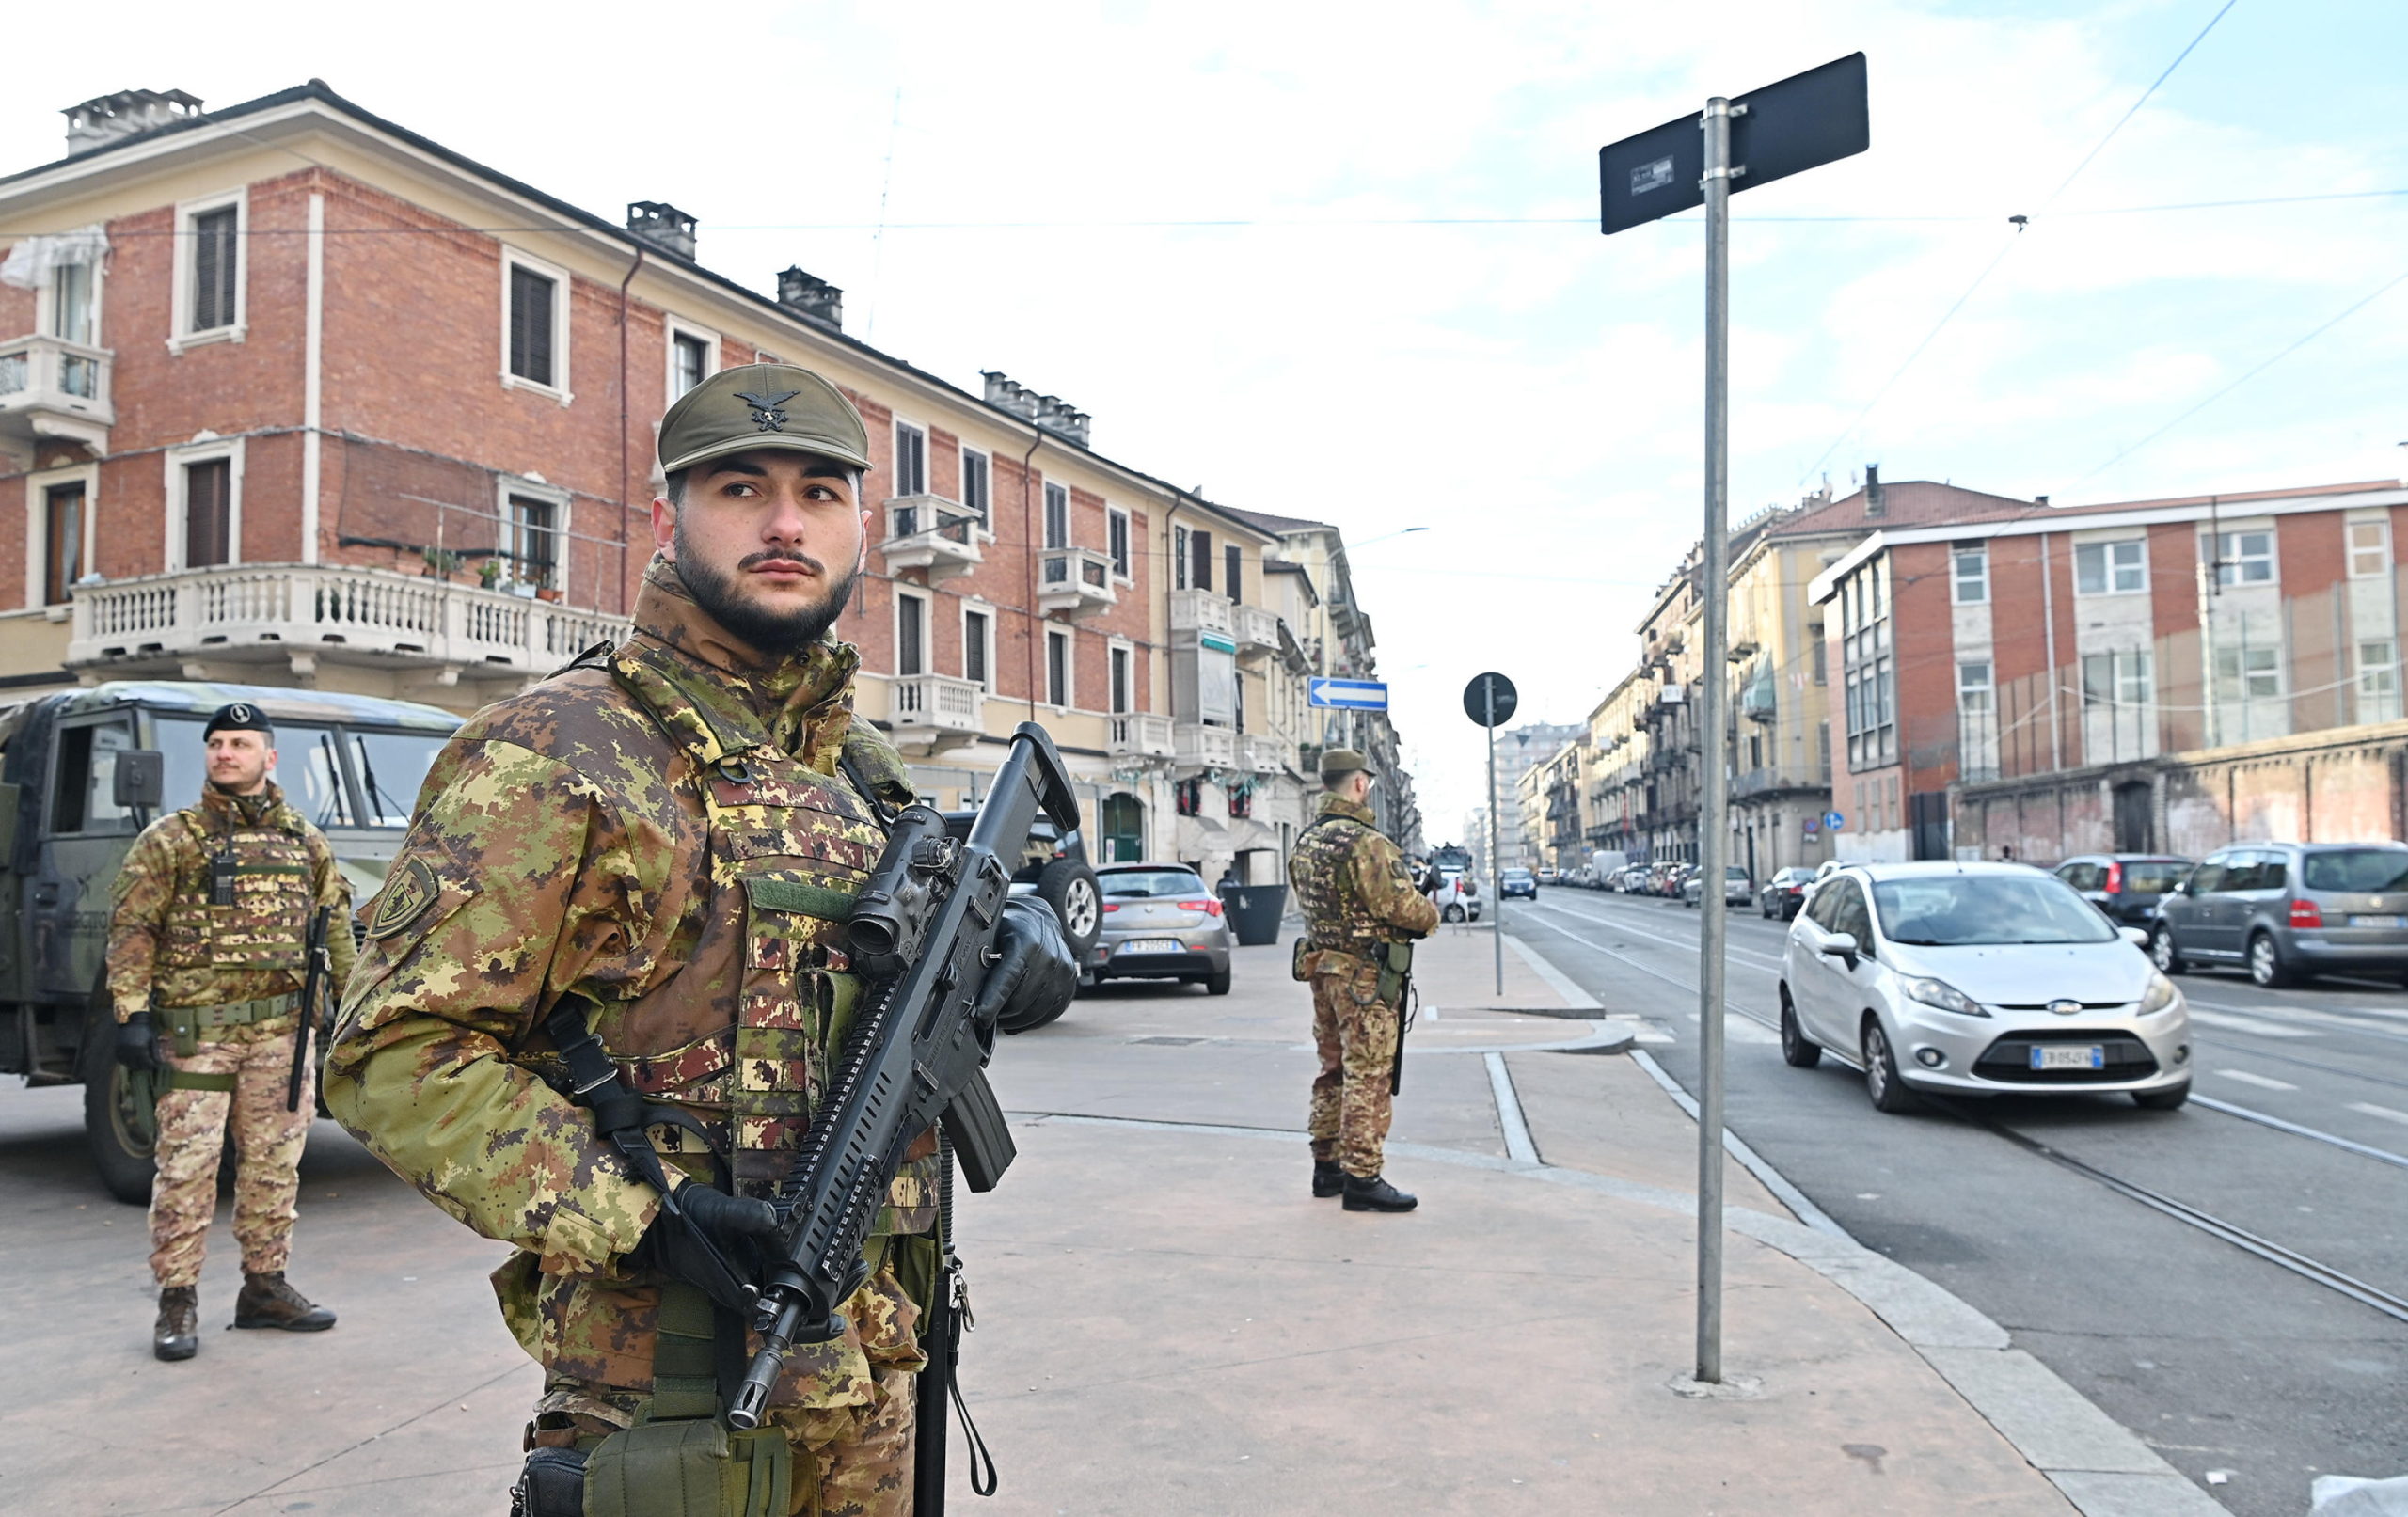 Torino: Operazione strade sicure, a Barriera di Milano arriva l'Esercito. (ANSA/ALESSANDRO DI MARCO)